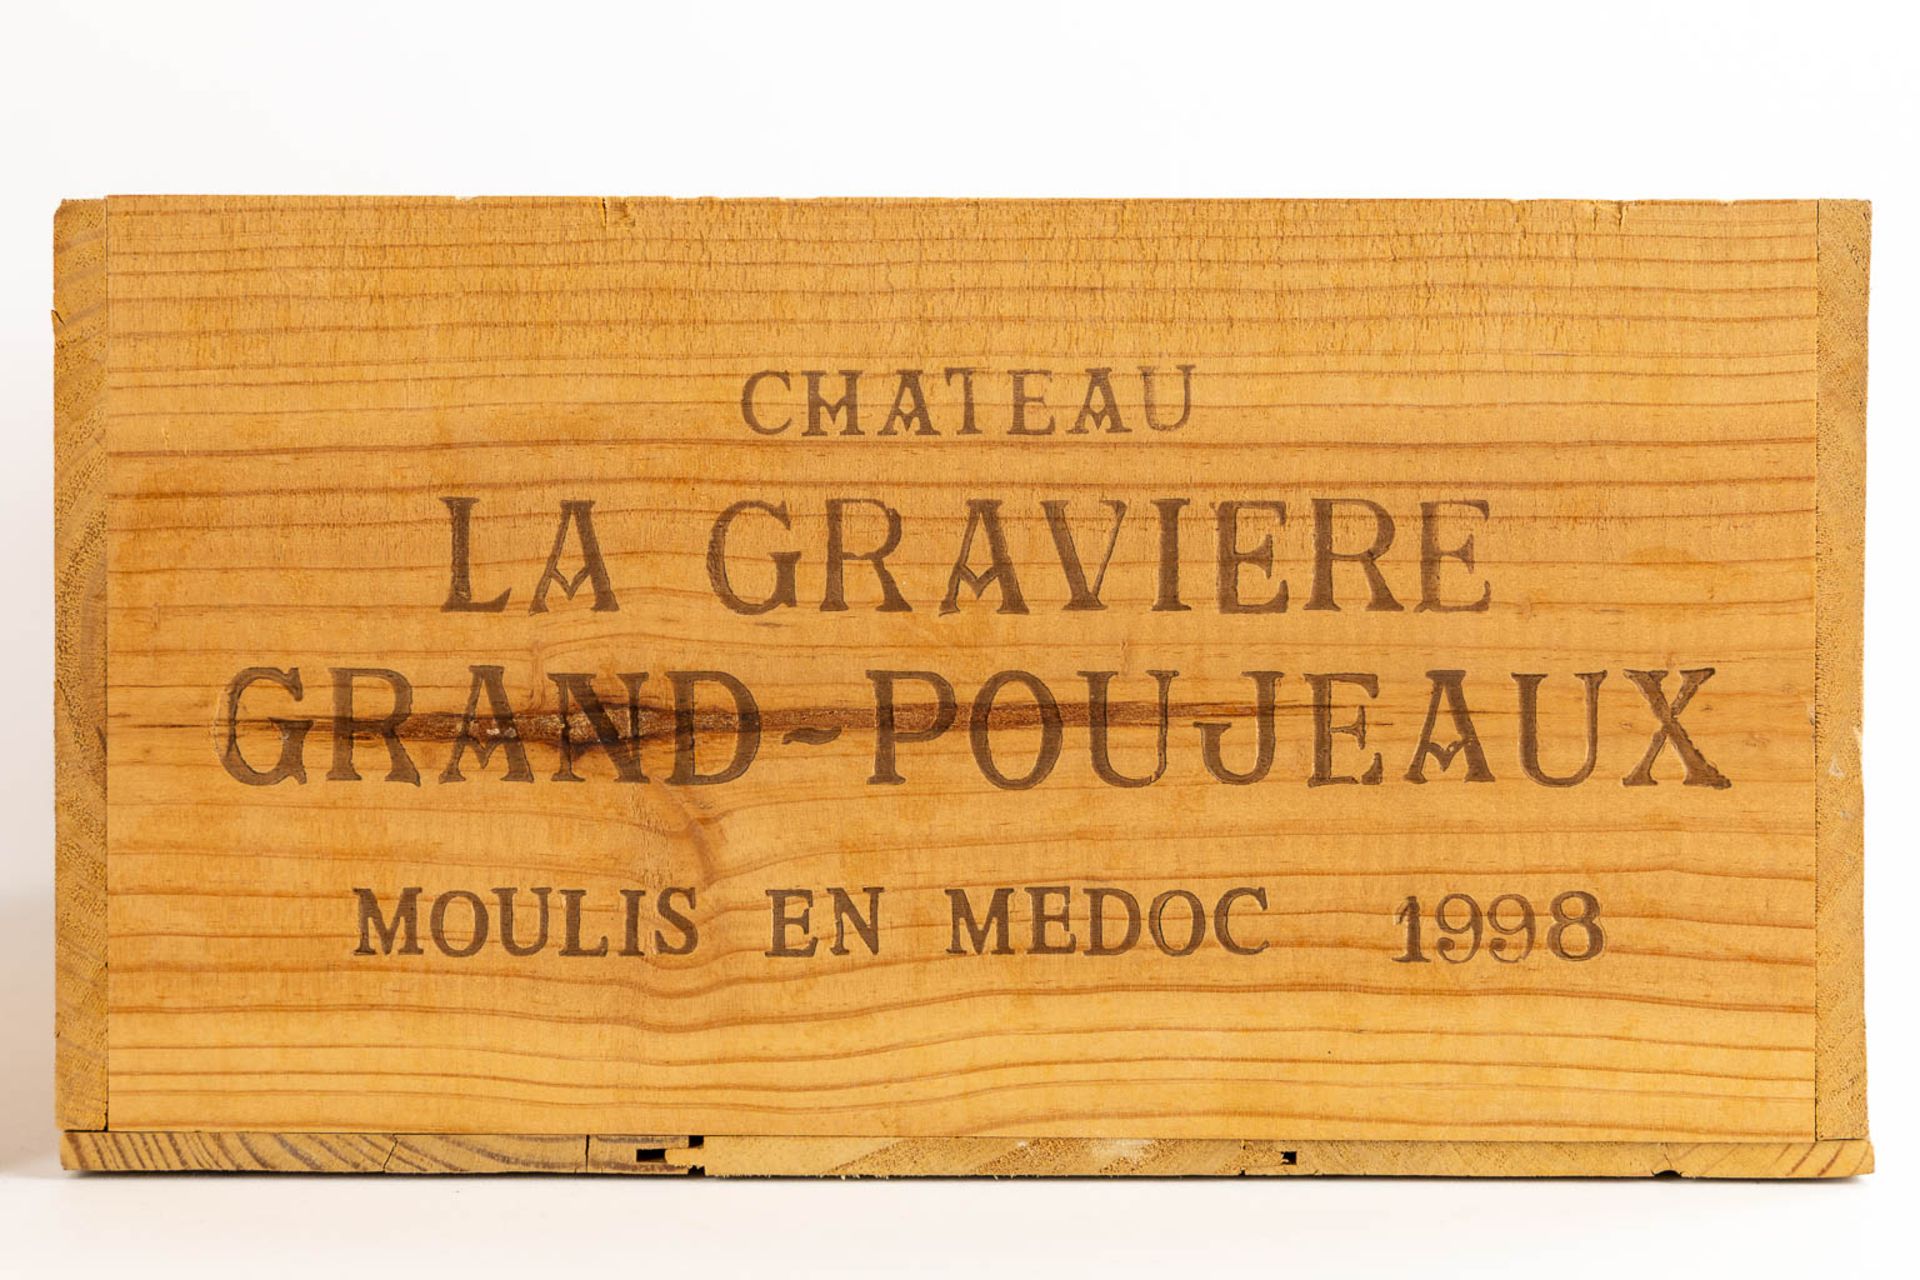 1998 Château La Gravière, Grand Poujeaux, 34 bottles (2 full crates and 10 bottles)  - Bild 2 aus 6